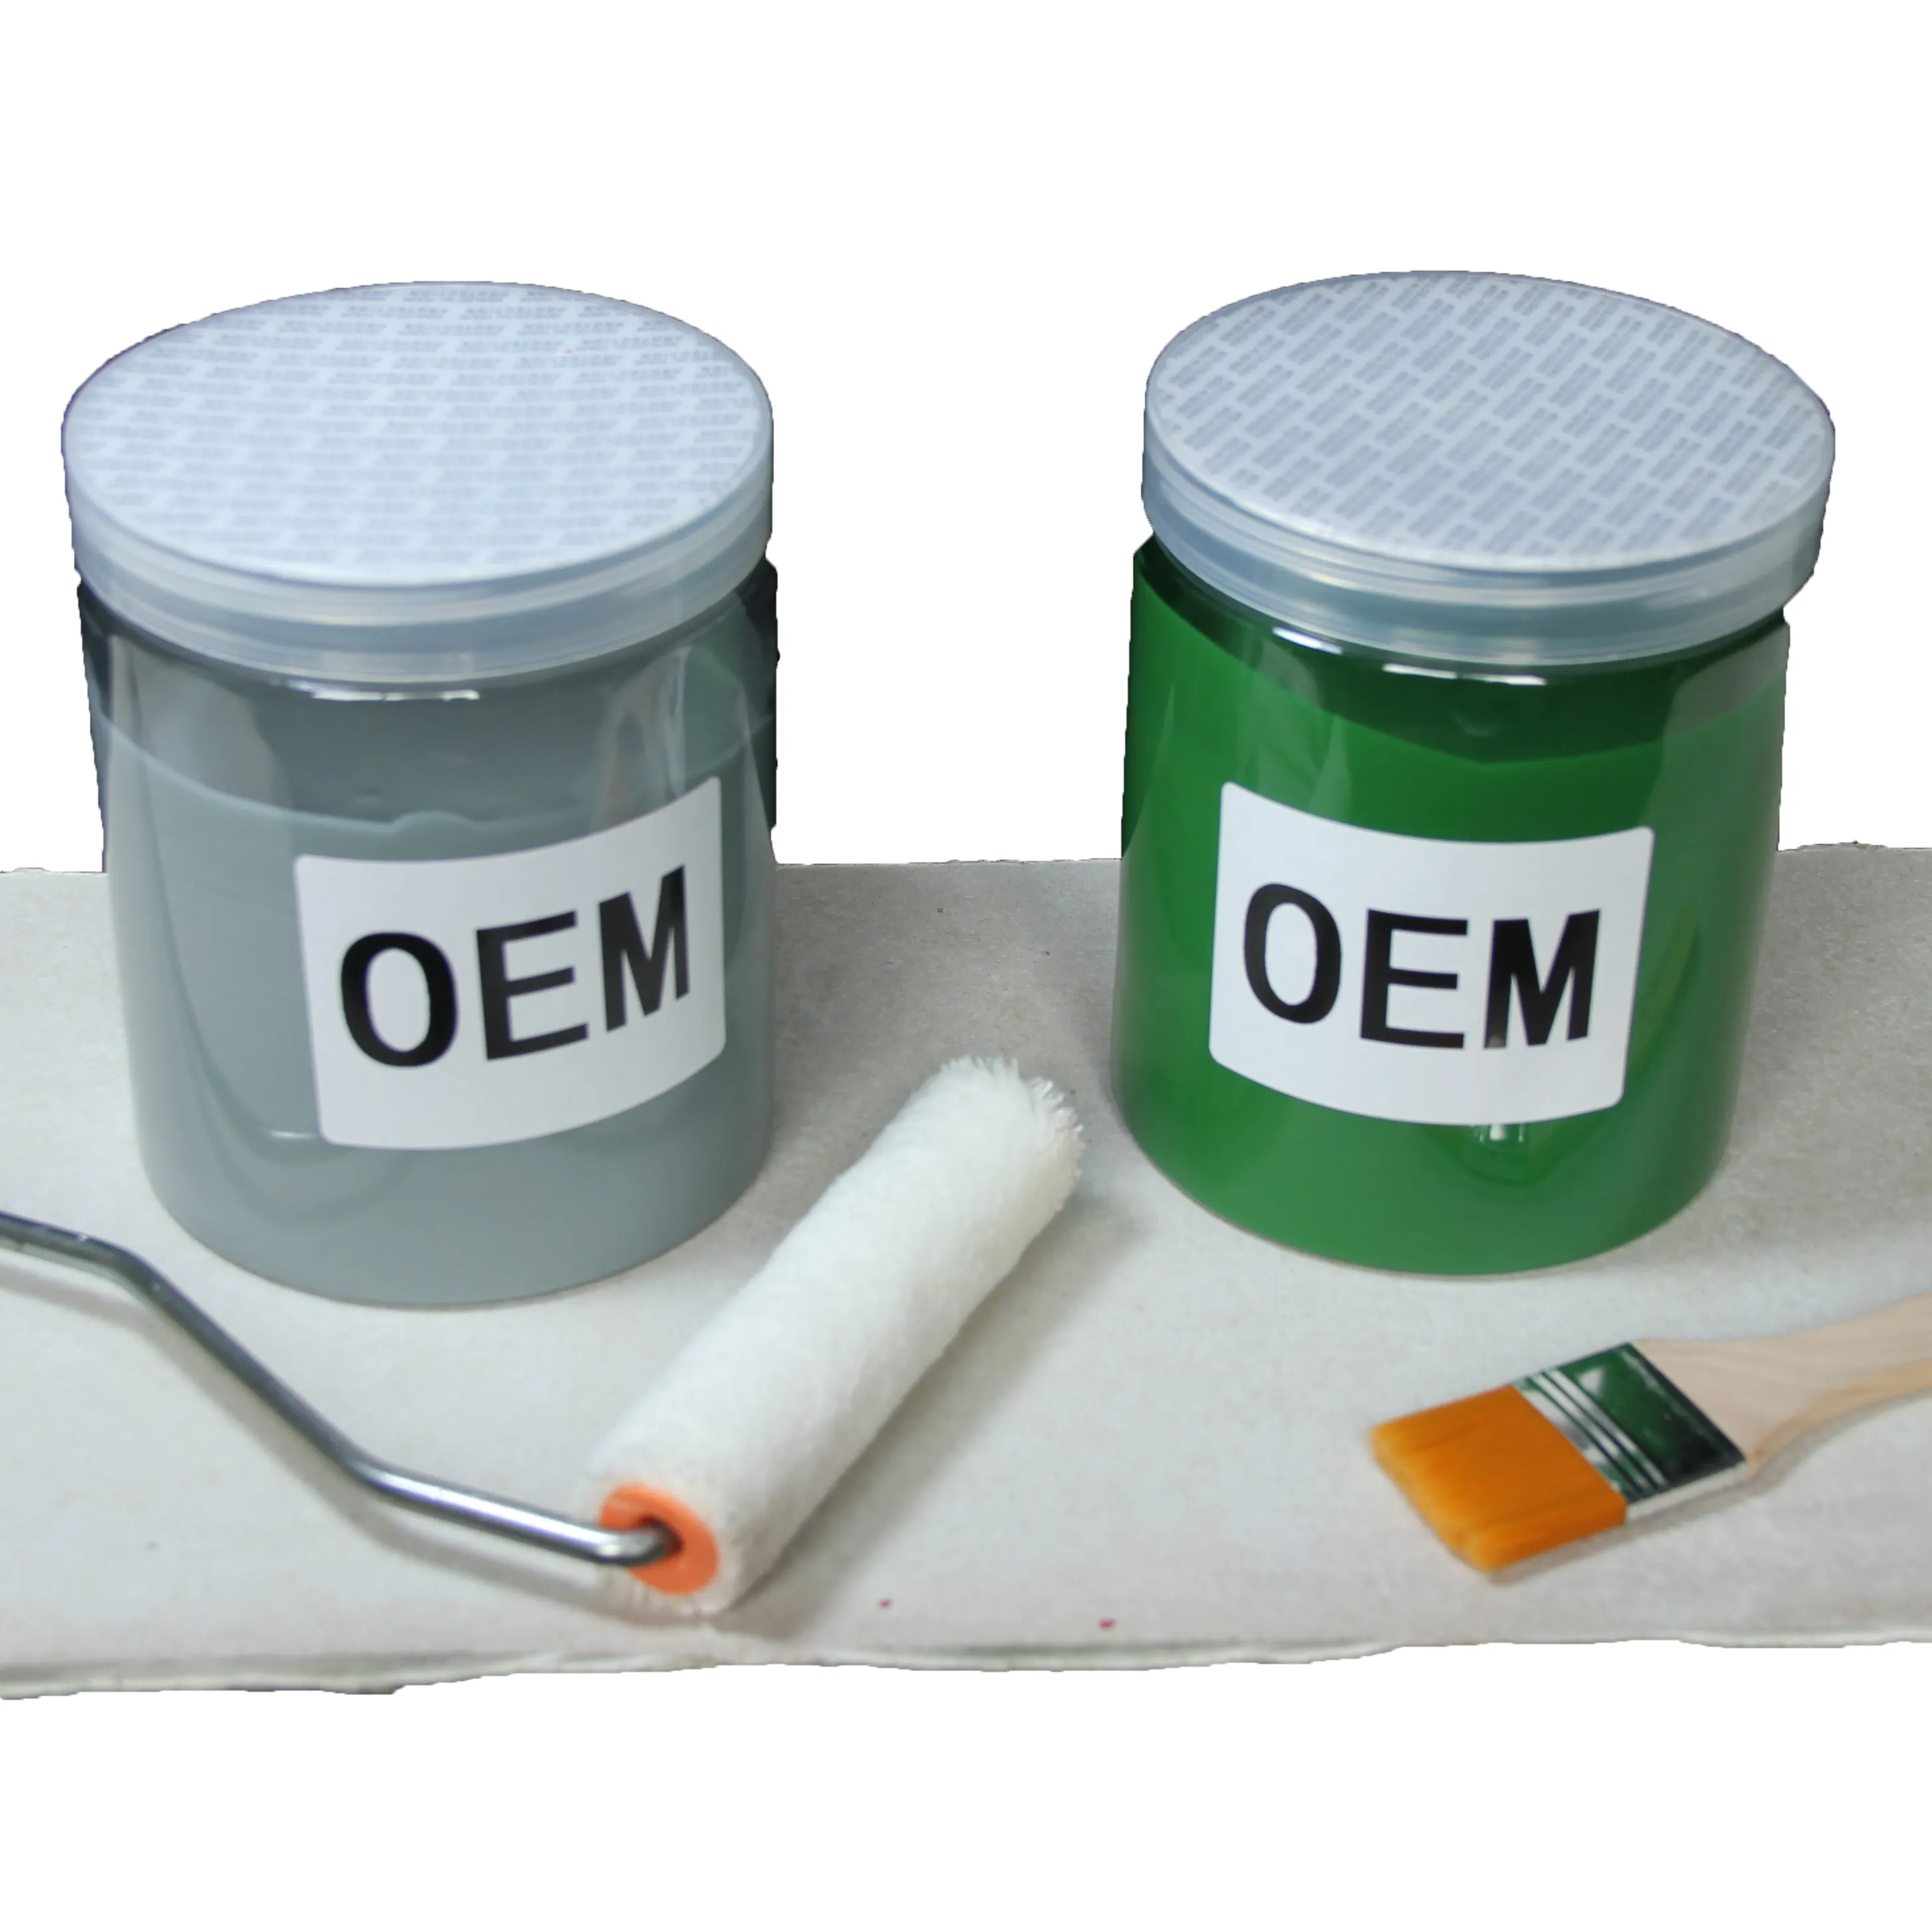 Fornitori di rivestimenti per pavimenti epossidici a Base d'acqua con etichetta privata pennello per pittura rivestimento per pavimenti epossidico antistatico acrilico